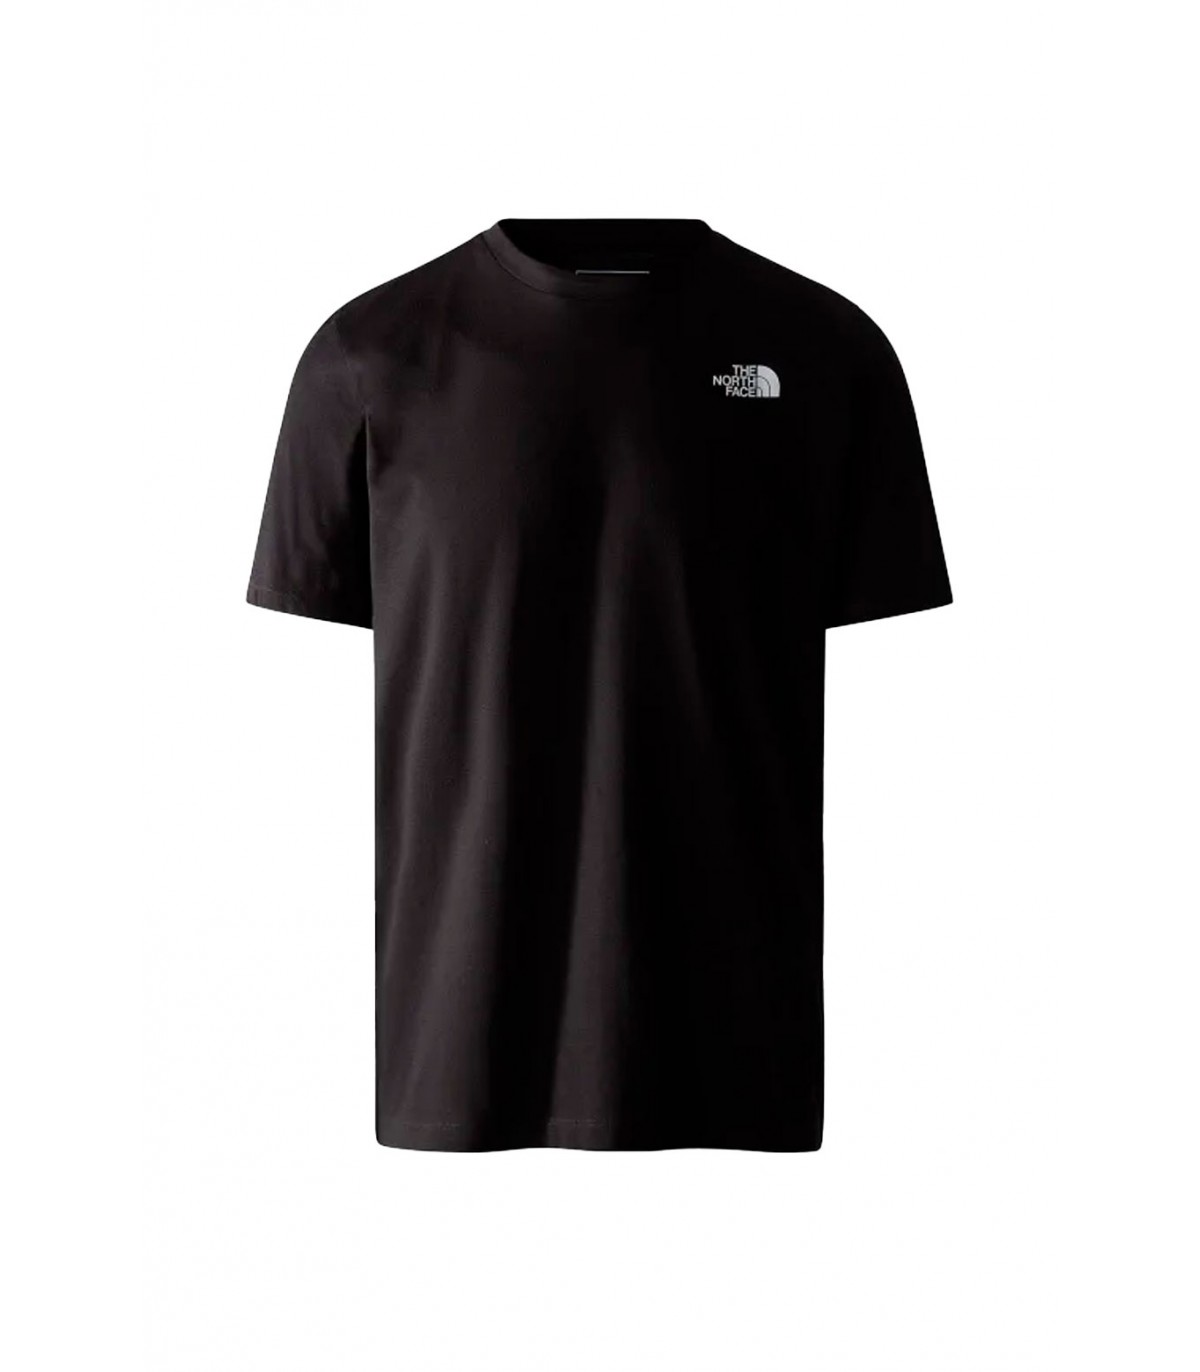 The North Face SIMPLE DOME TEE - Camiseta estampada - black/negro